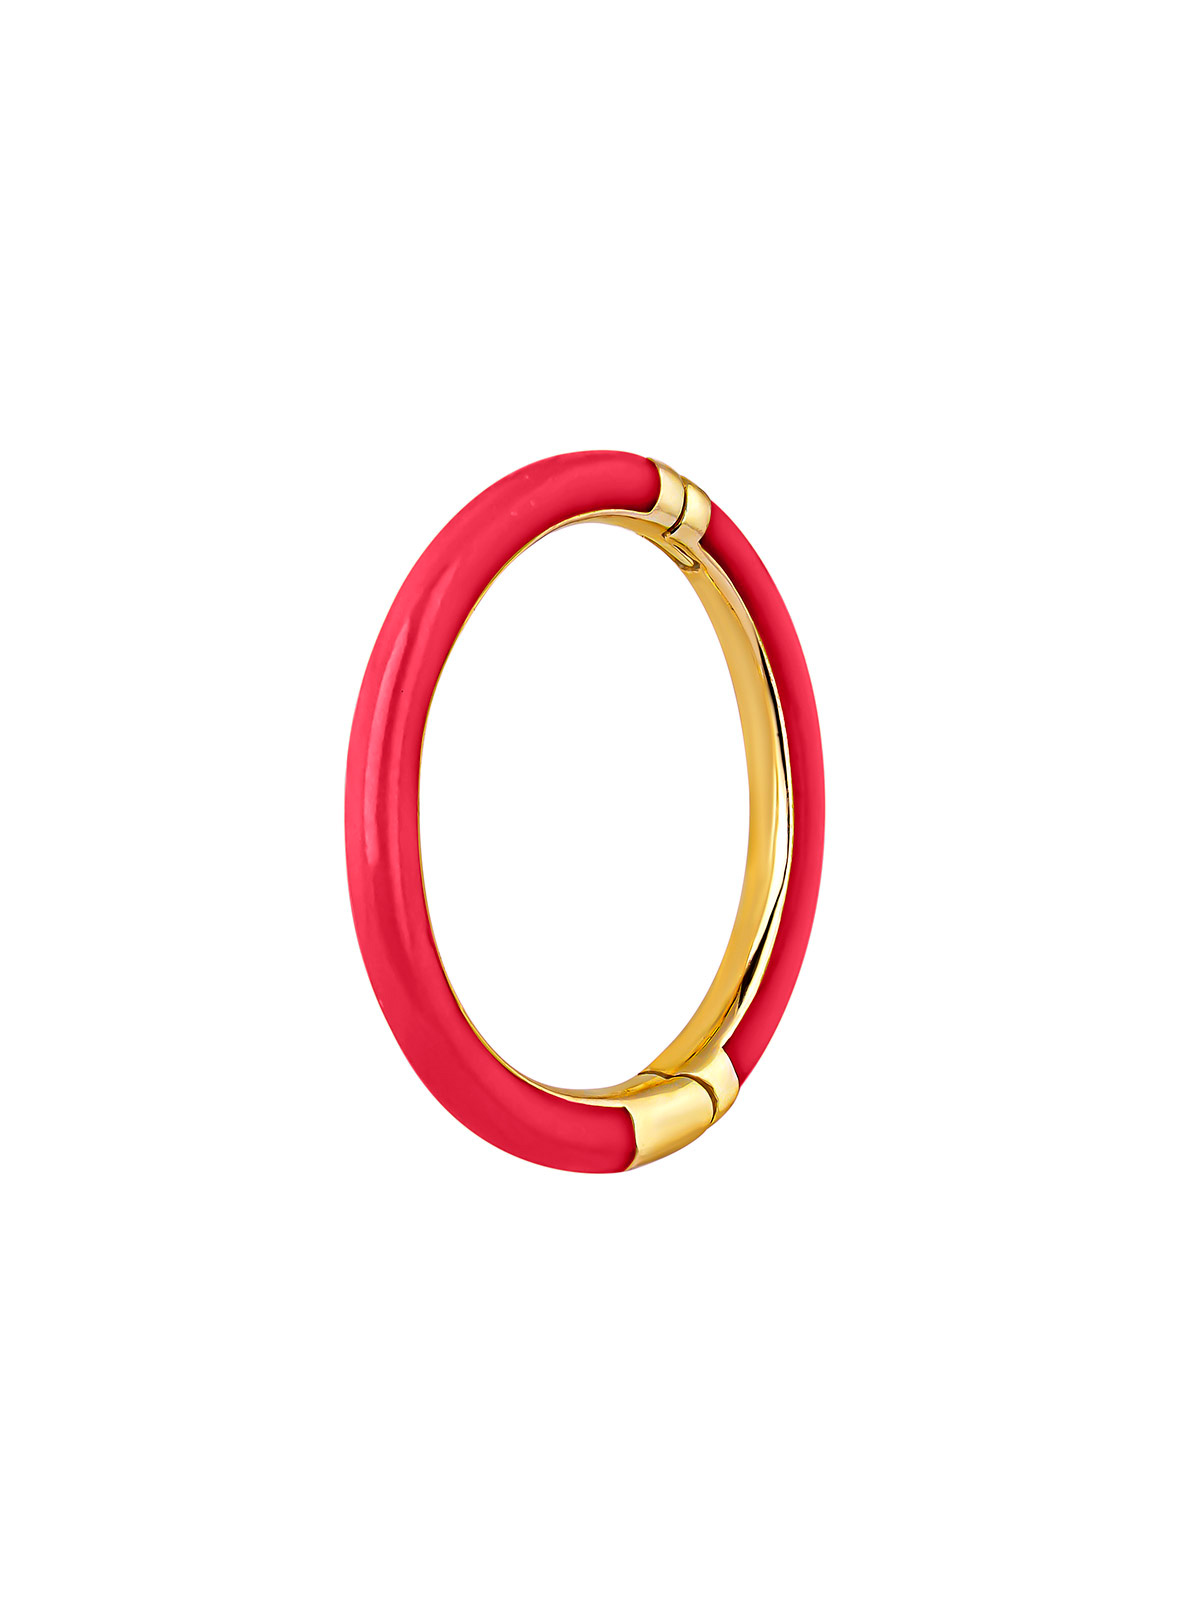 Boucle d'oreille individuelle, petit anneau en or jaune 9K avec émail rose.